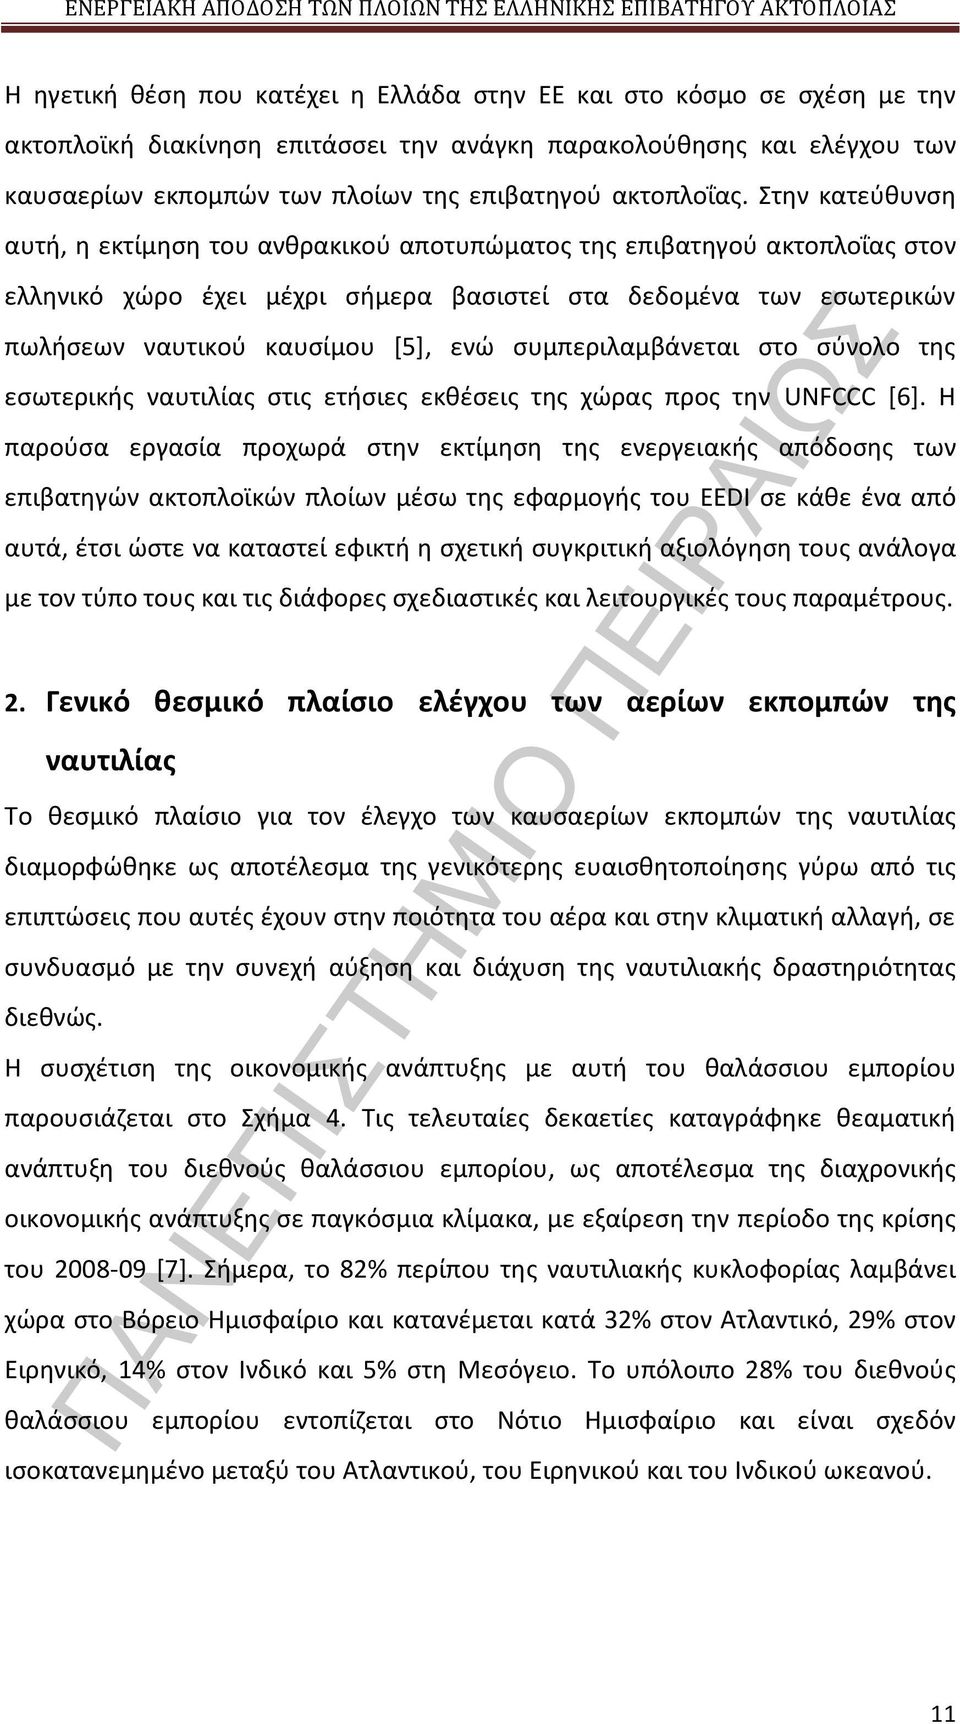 Στην κατεύθυνση αυτή, η εκτίμηση του ανθρακικού αποτυπώματος της επιβατηγού ακτοπλοΐας στον ελληνικό χώρο έχει μέχρι σήμερα βασιστεί στα δεδομένα των εσωτερικών πωλήσεων ναυτικού καυσίμου [5], ενώ